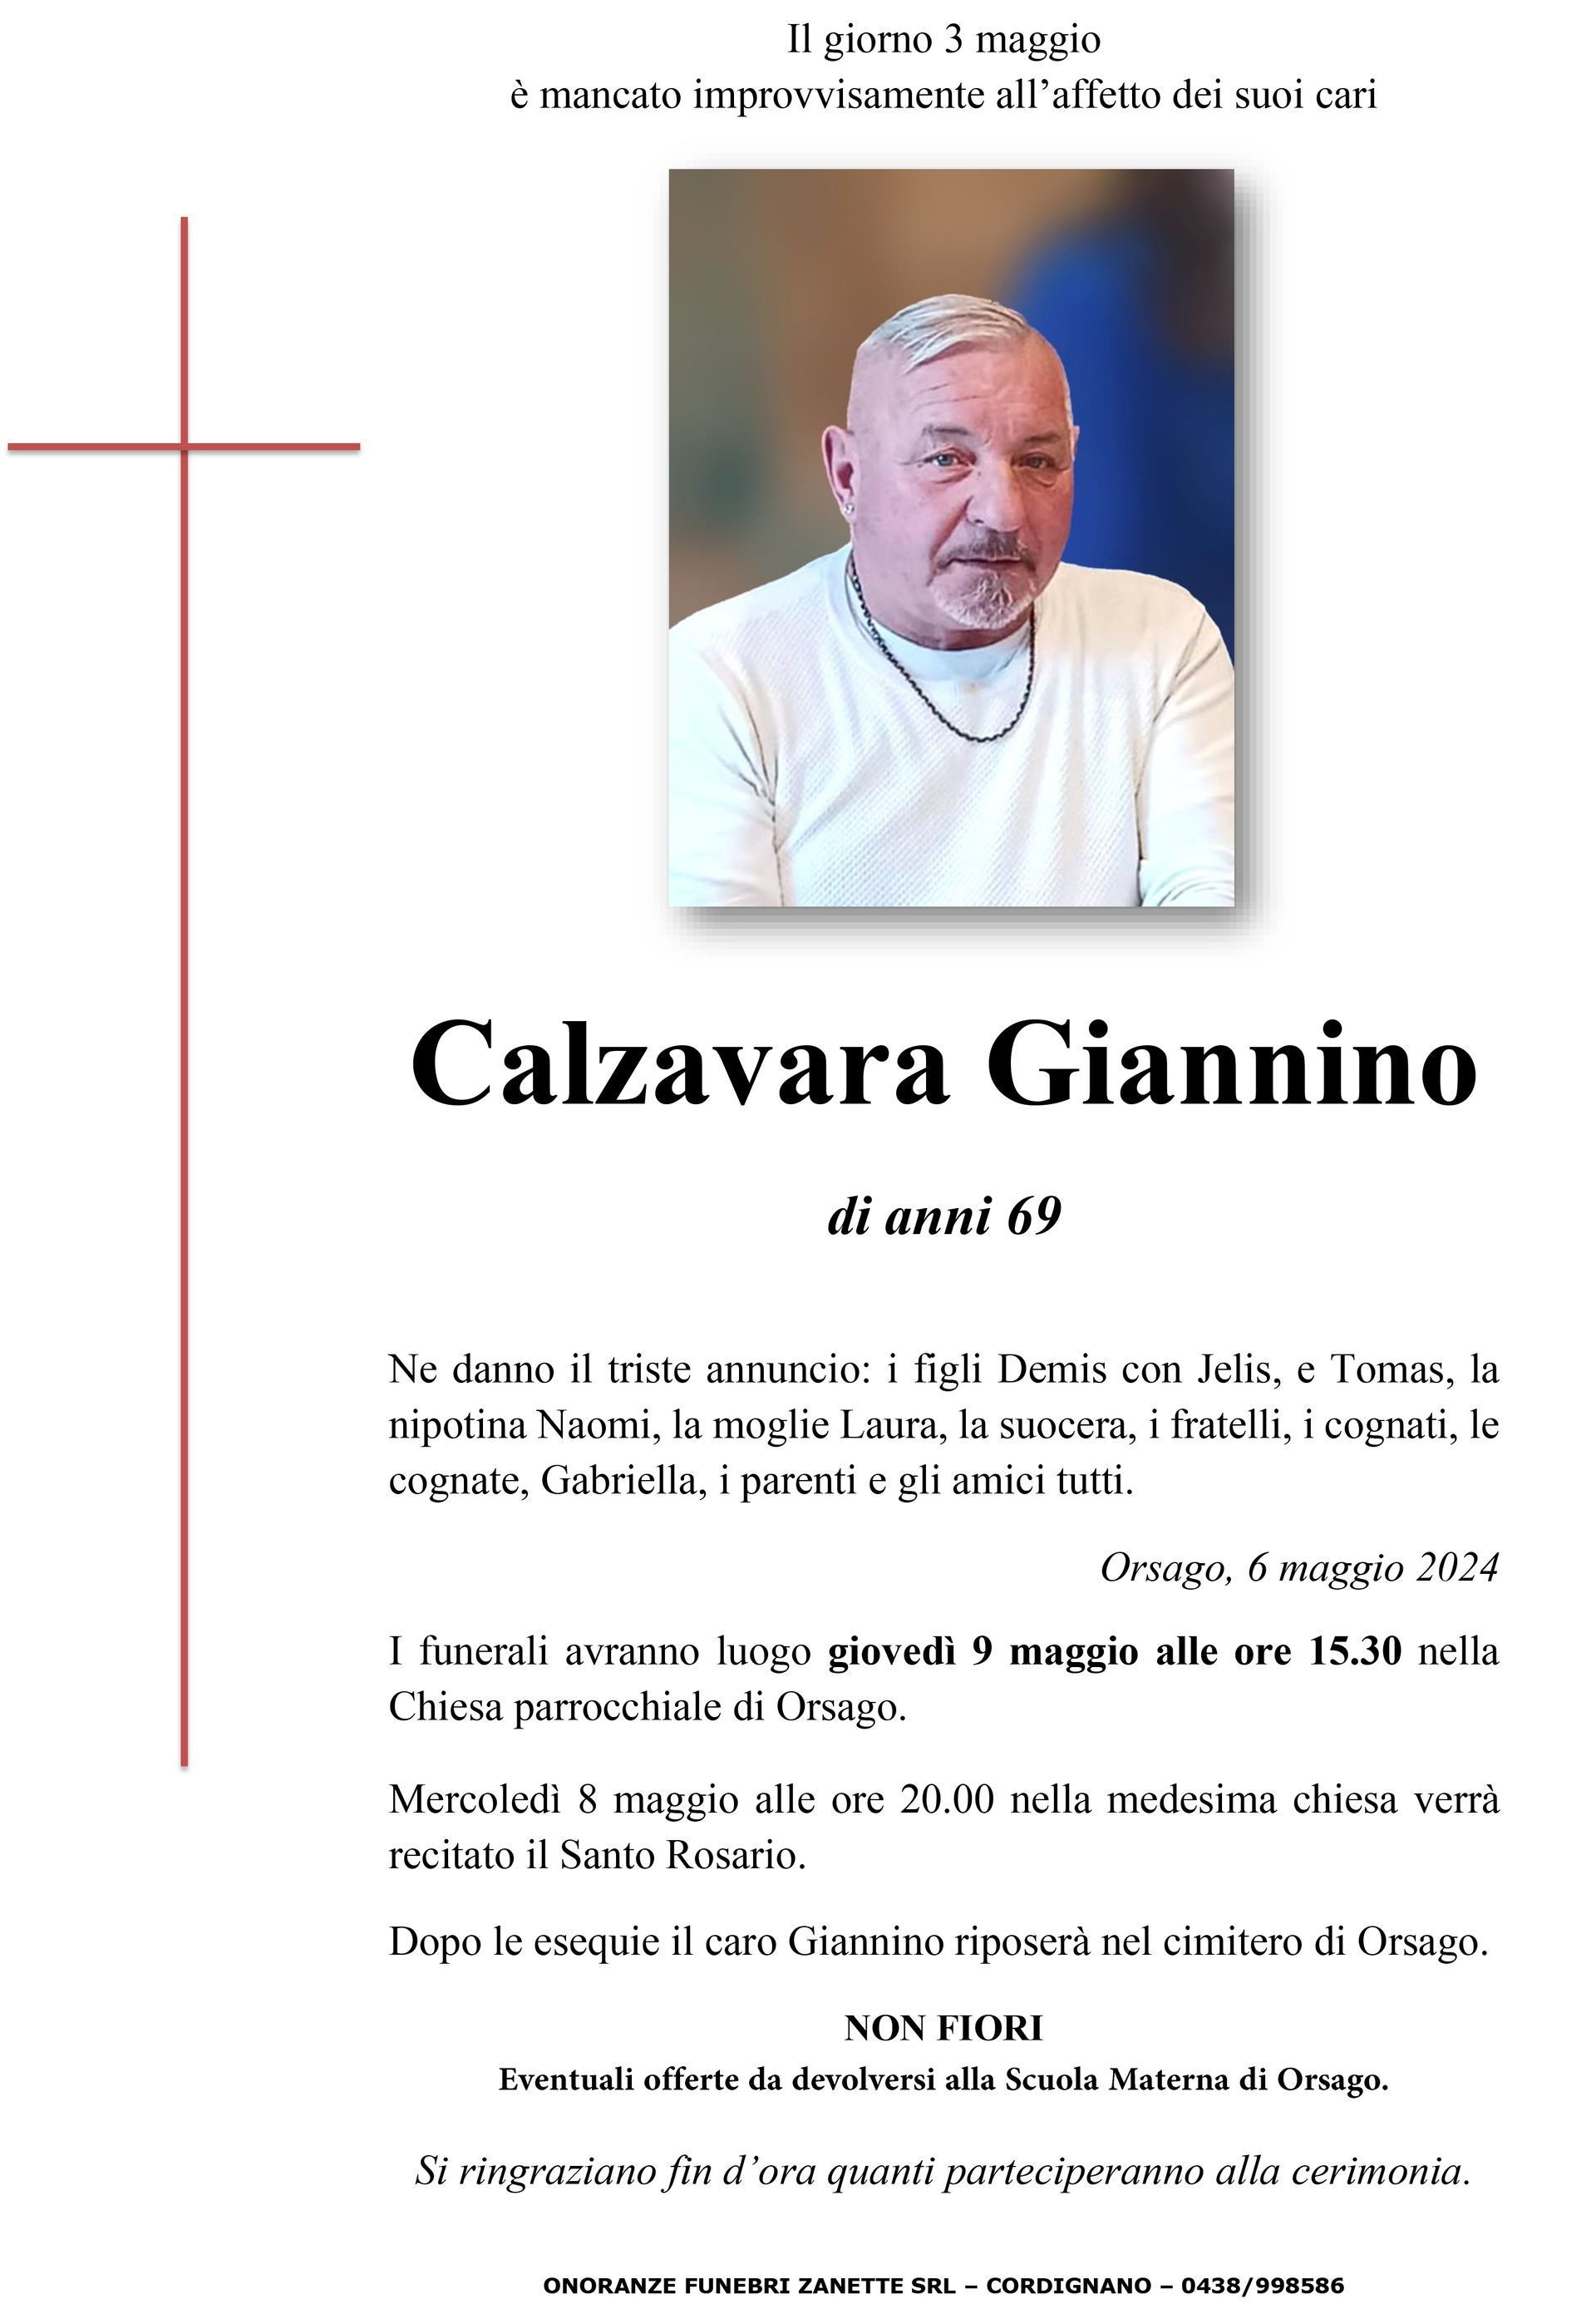 Calzavara Giannino